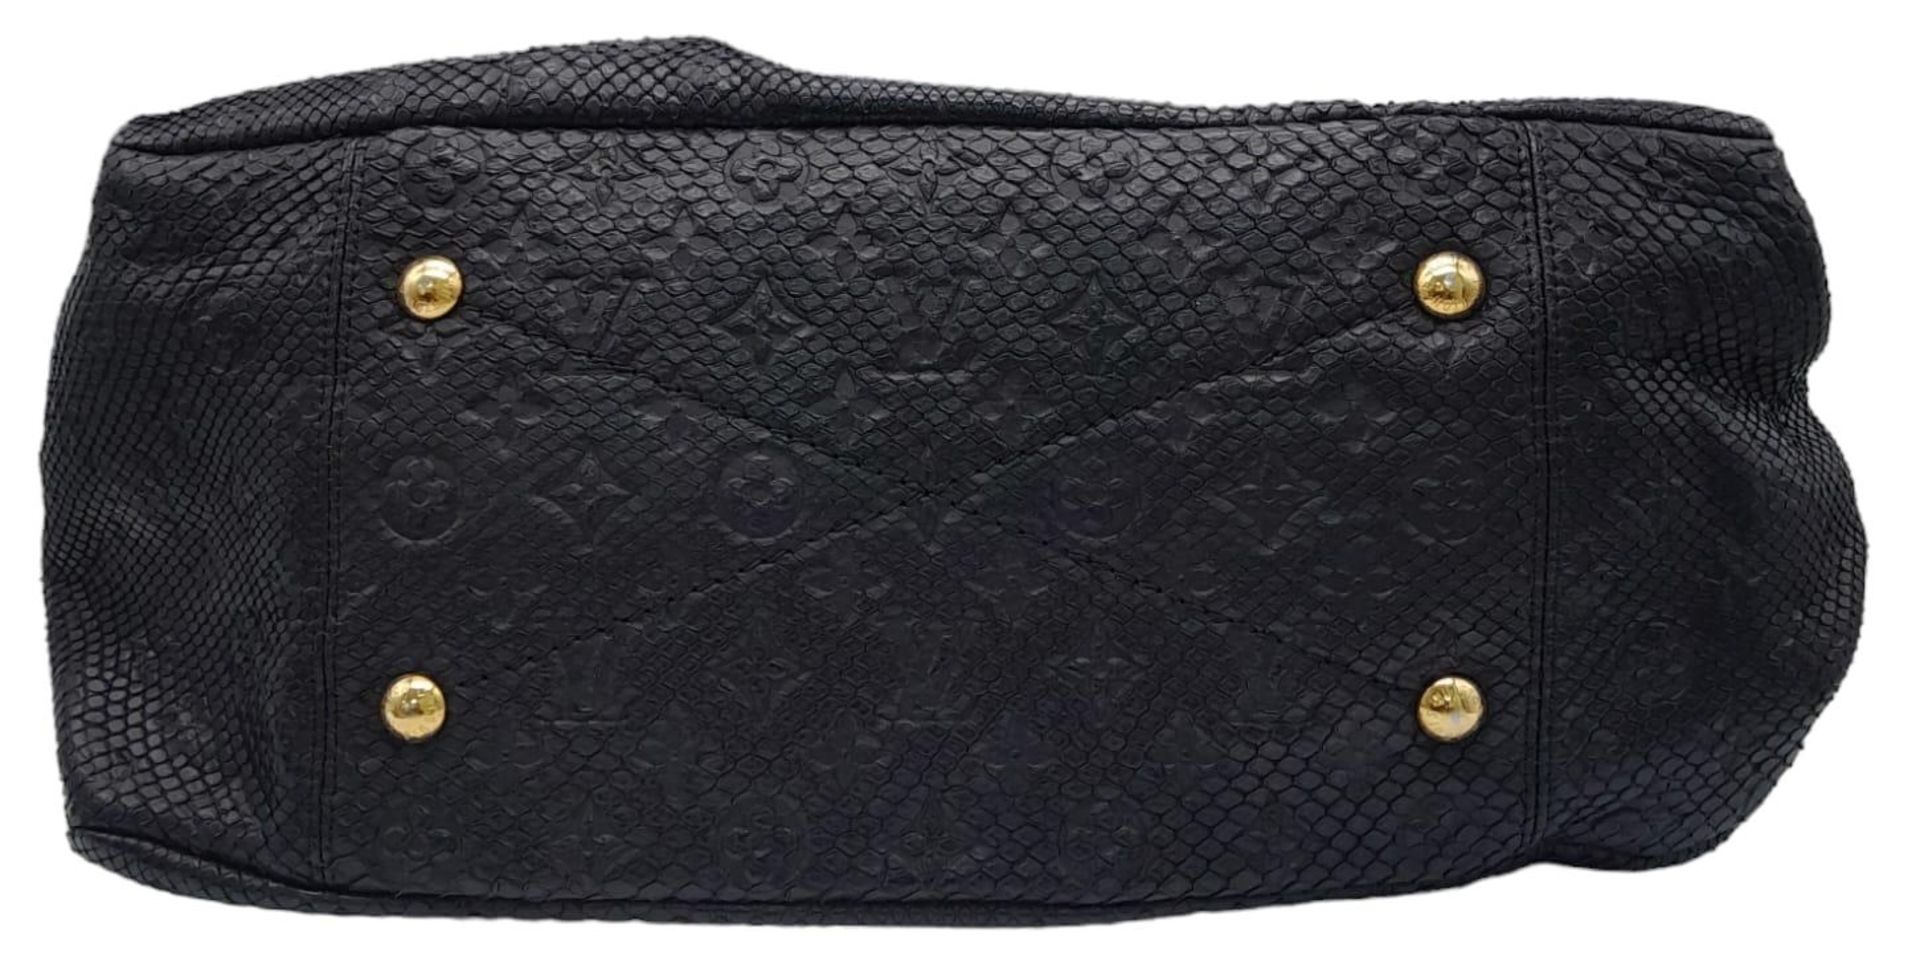 A Louis Vuitton Monogram Black Snakeskin Tote Bag. Gold tone hardware. Spacious black leather - Bild 4 aus 8